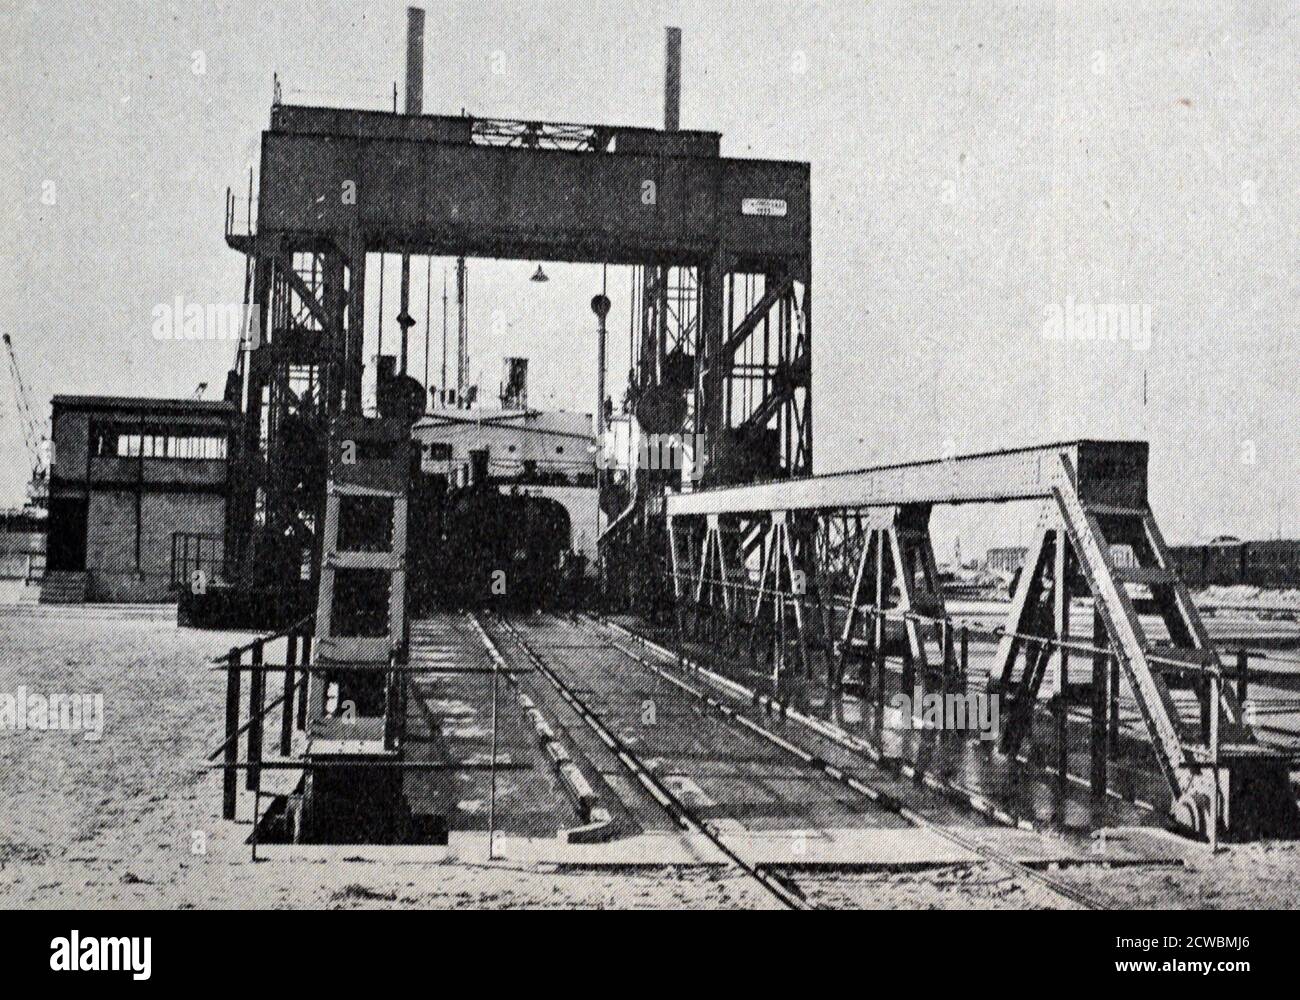 Schwarz-Weiß-Fotografie eines Fährschiffes zwischen Dünkirchen und Dover, das sich auf die Abfahrt vorbereitet. Stockfoto